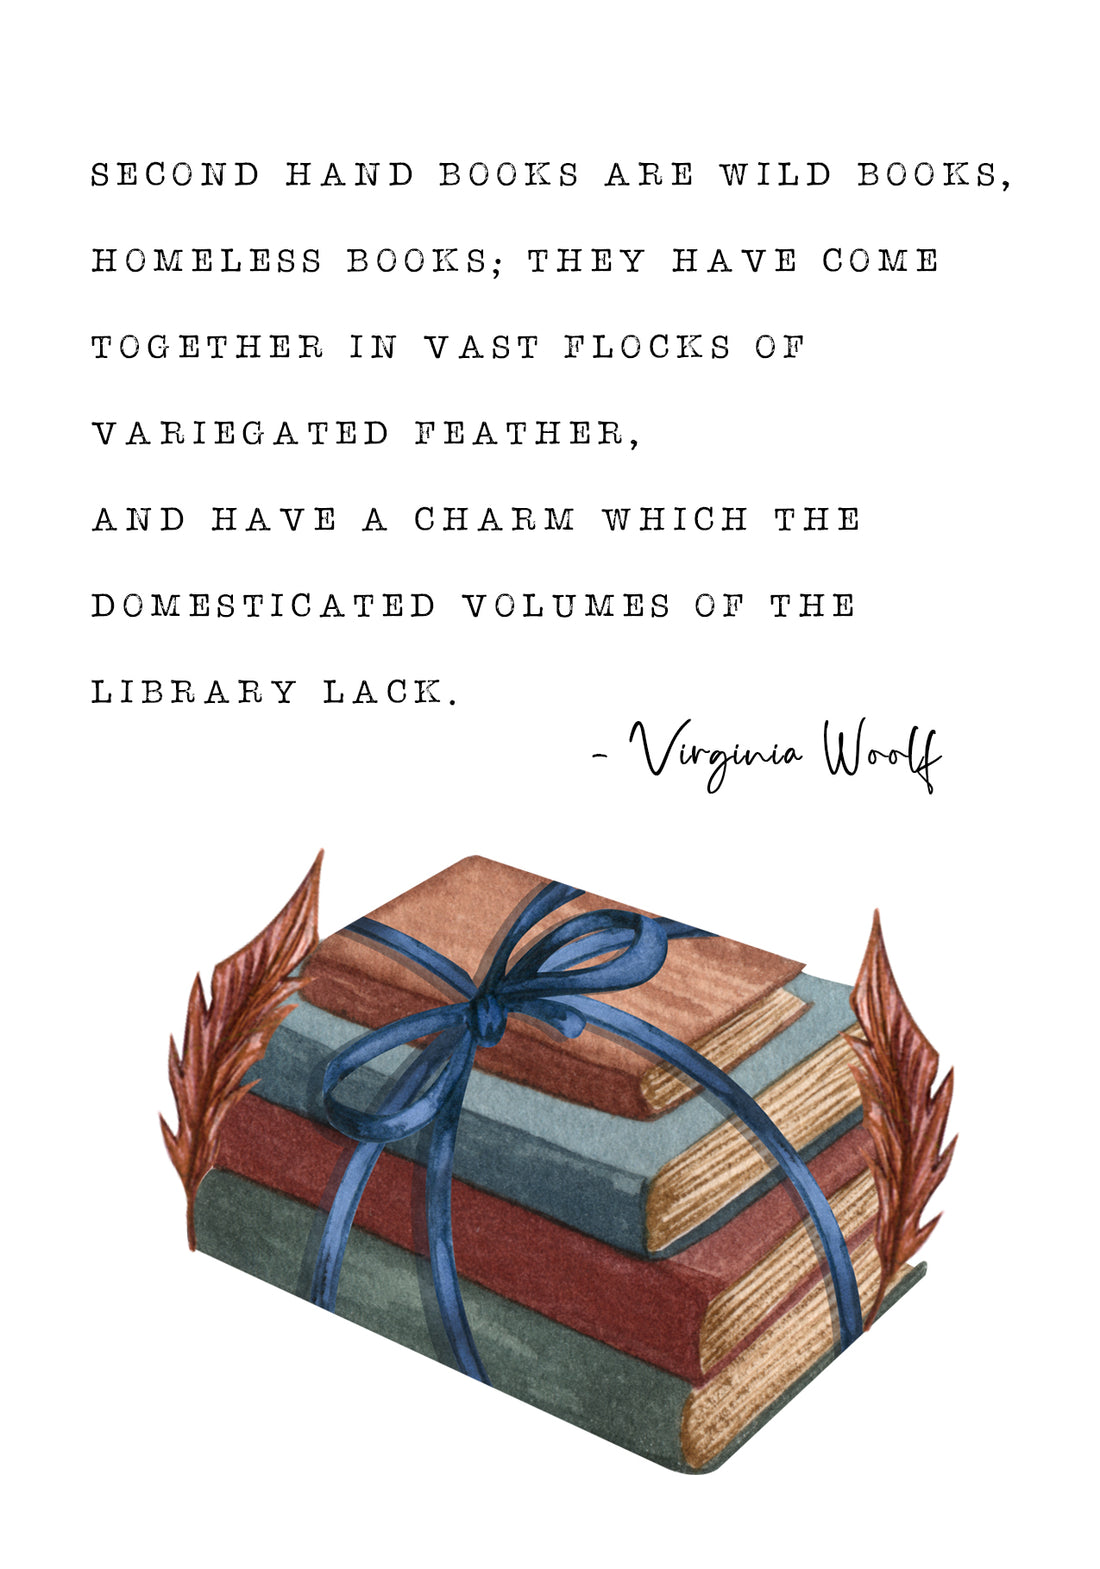 Virginia Woolf - &